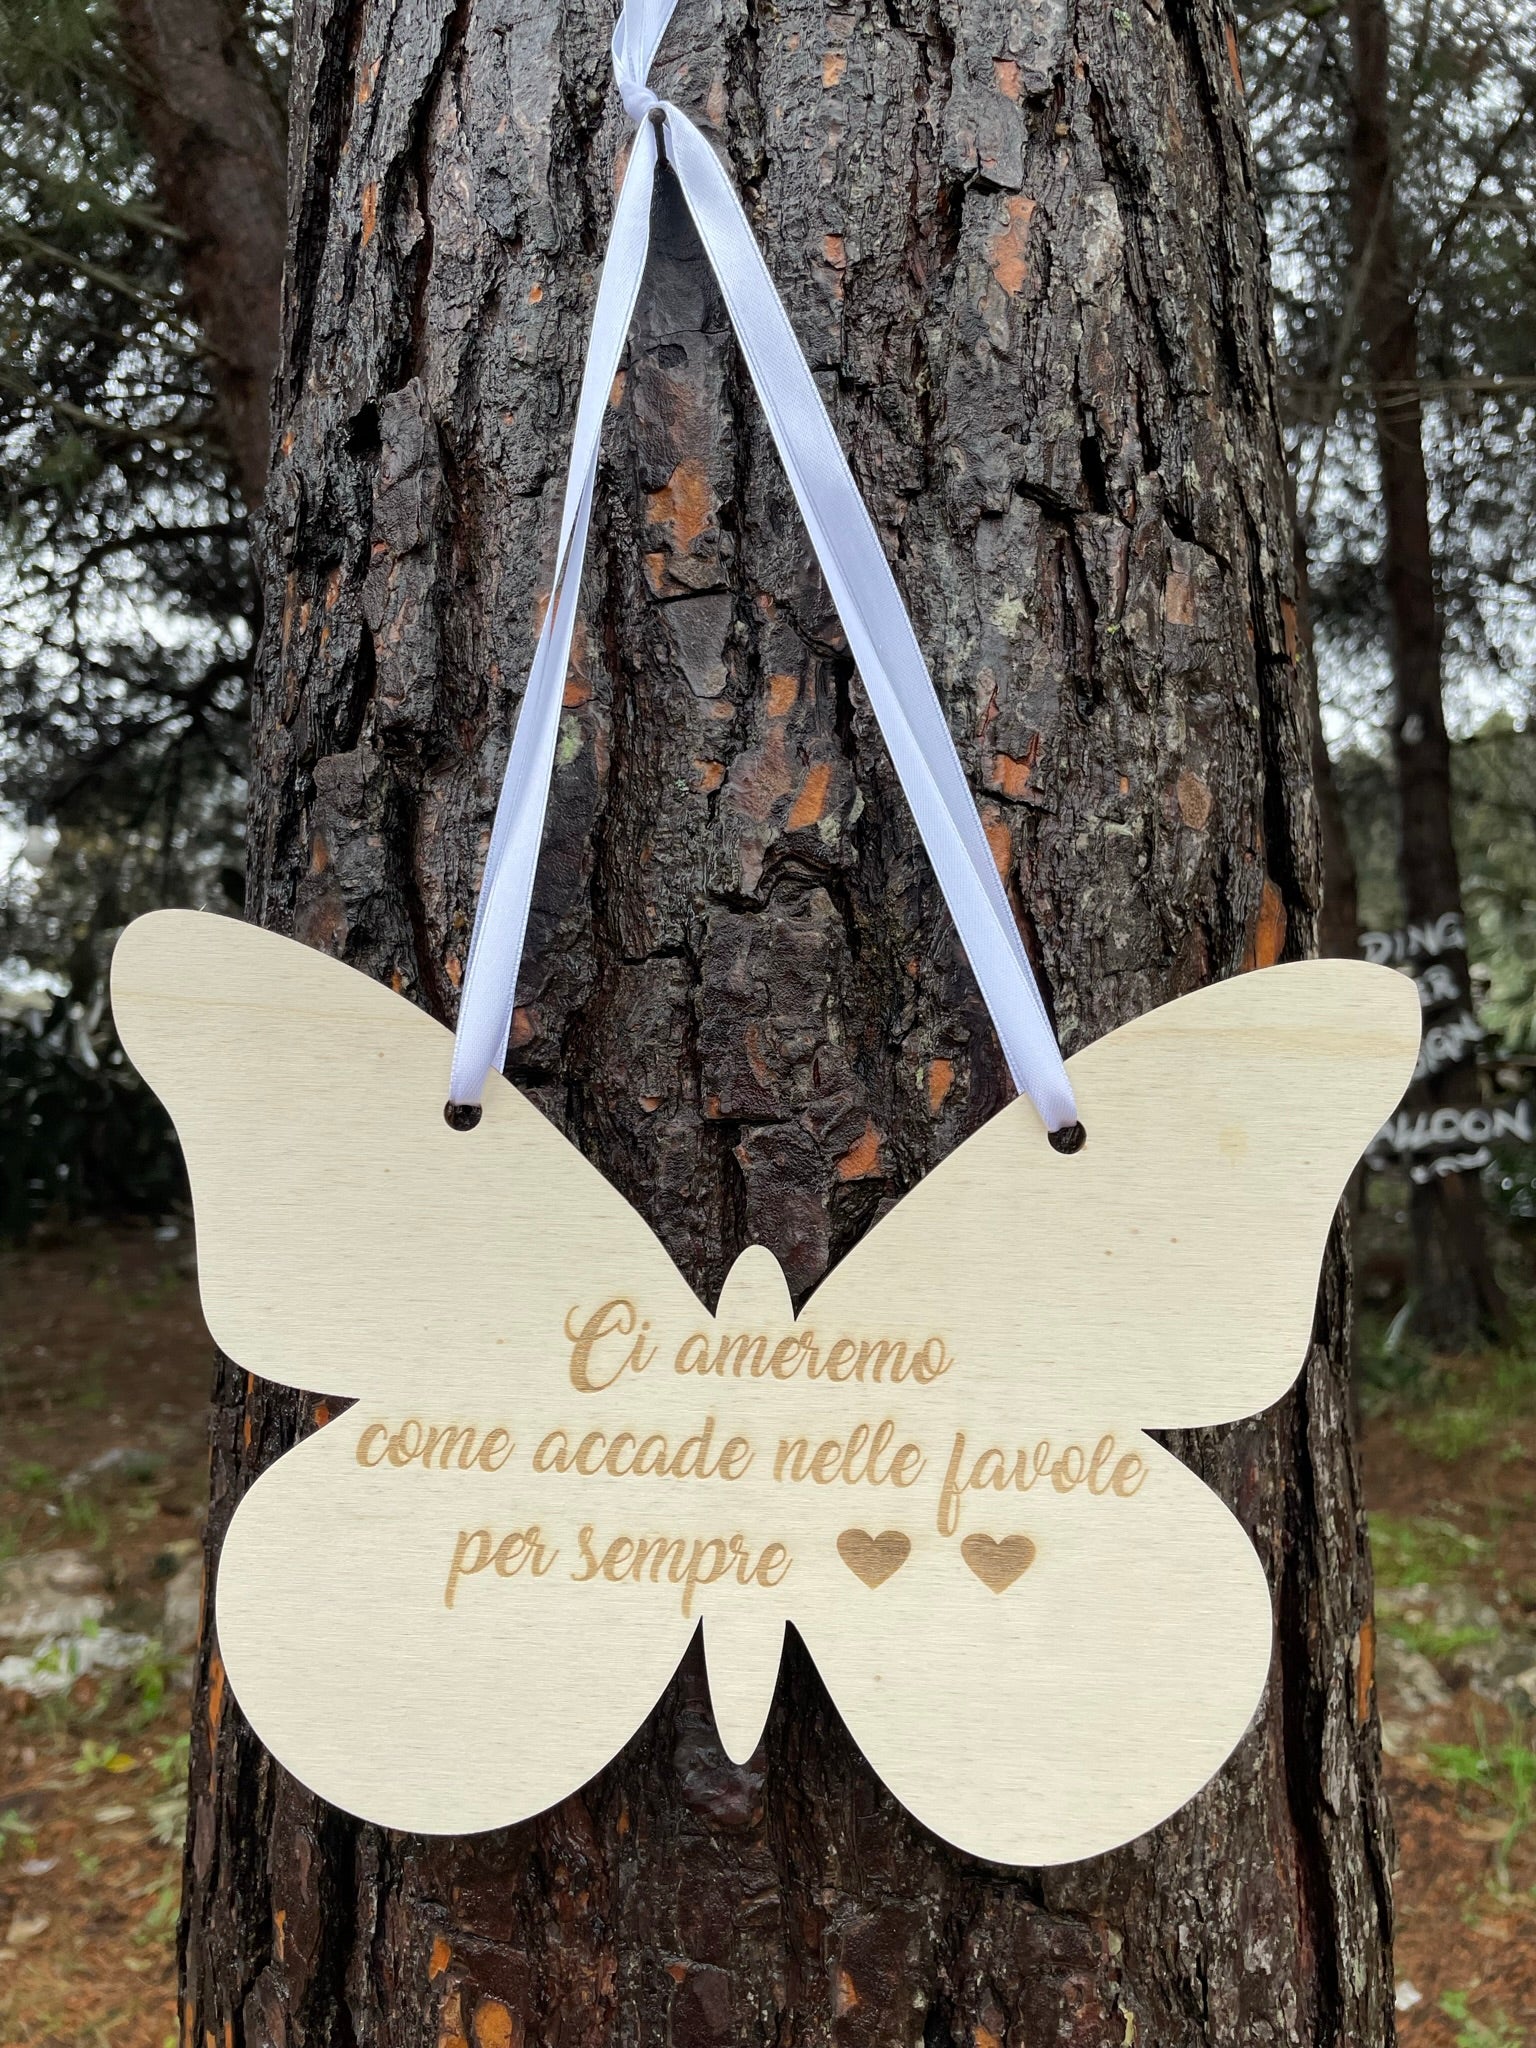 Targa in legno con messaggio speciale a forma di farfalla Idea's Cottage